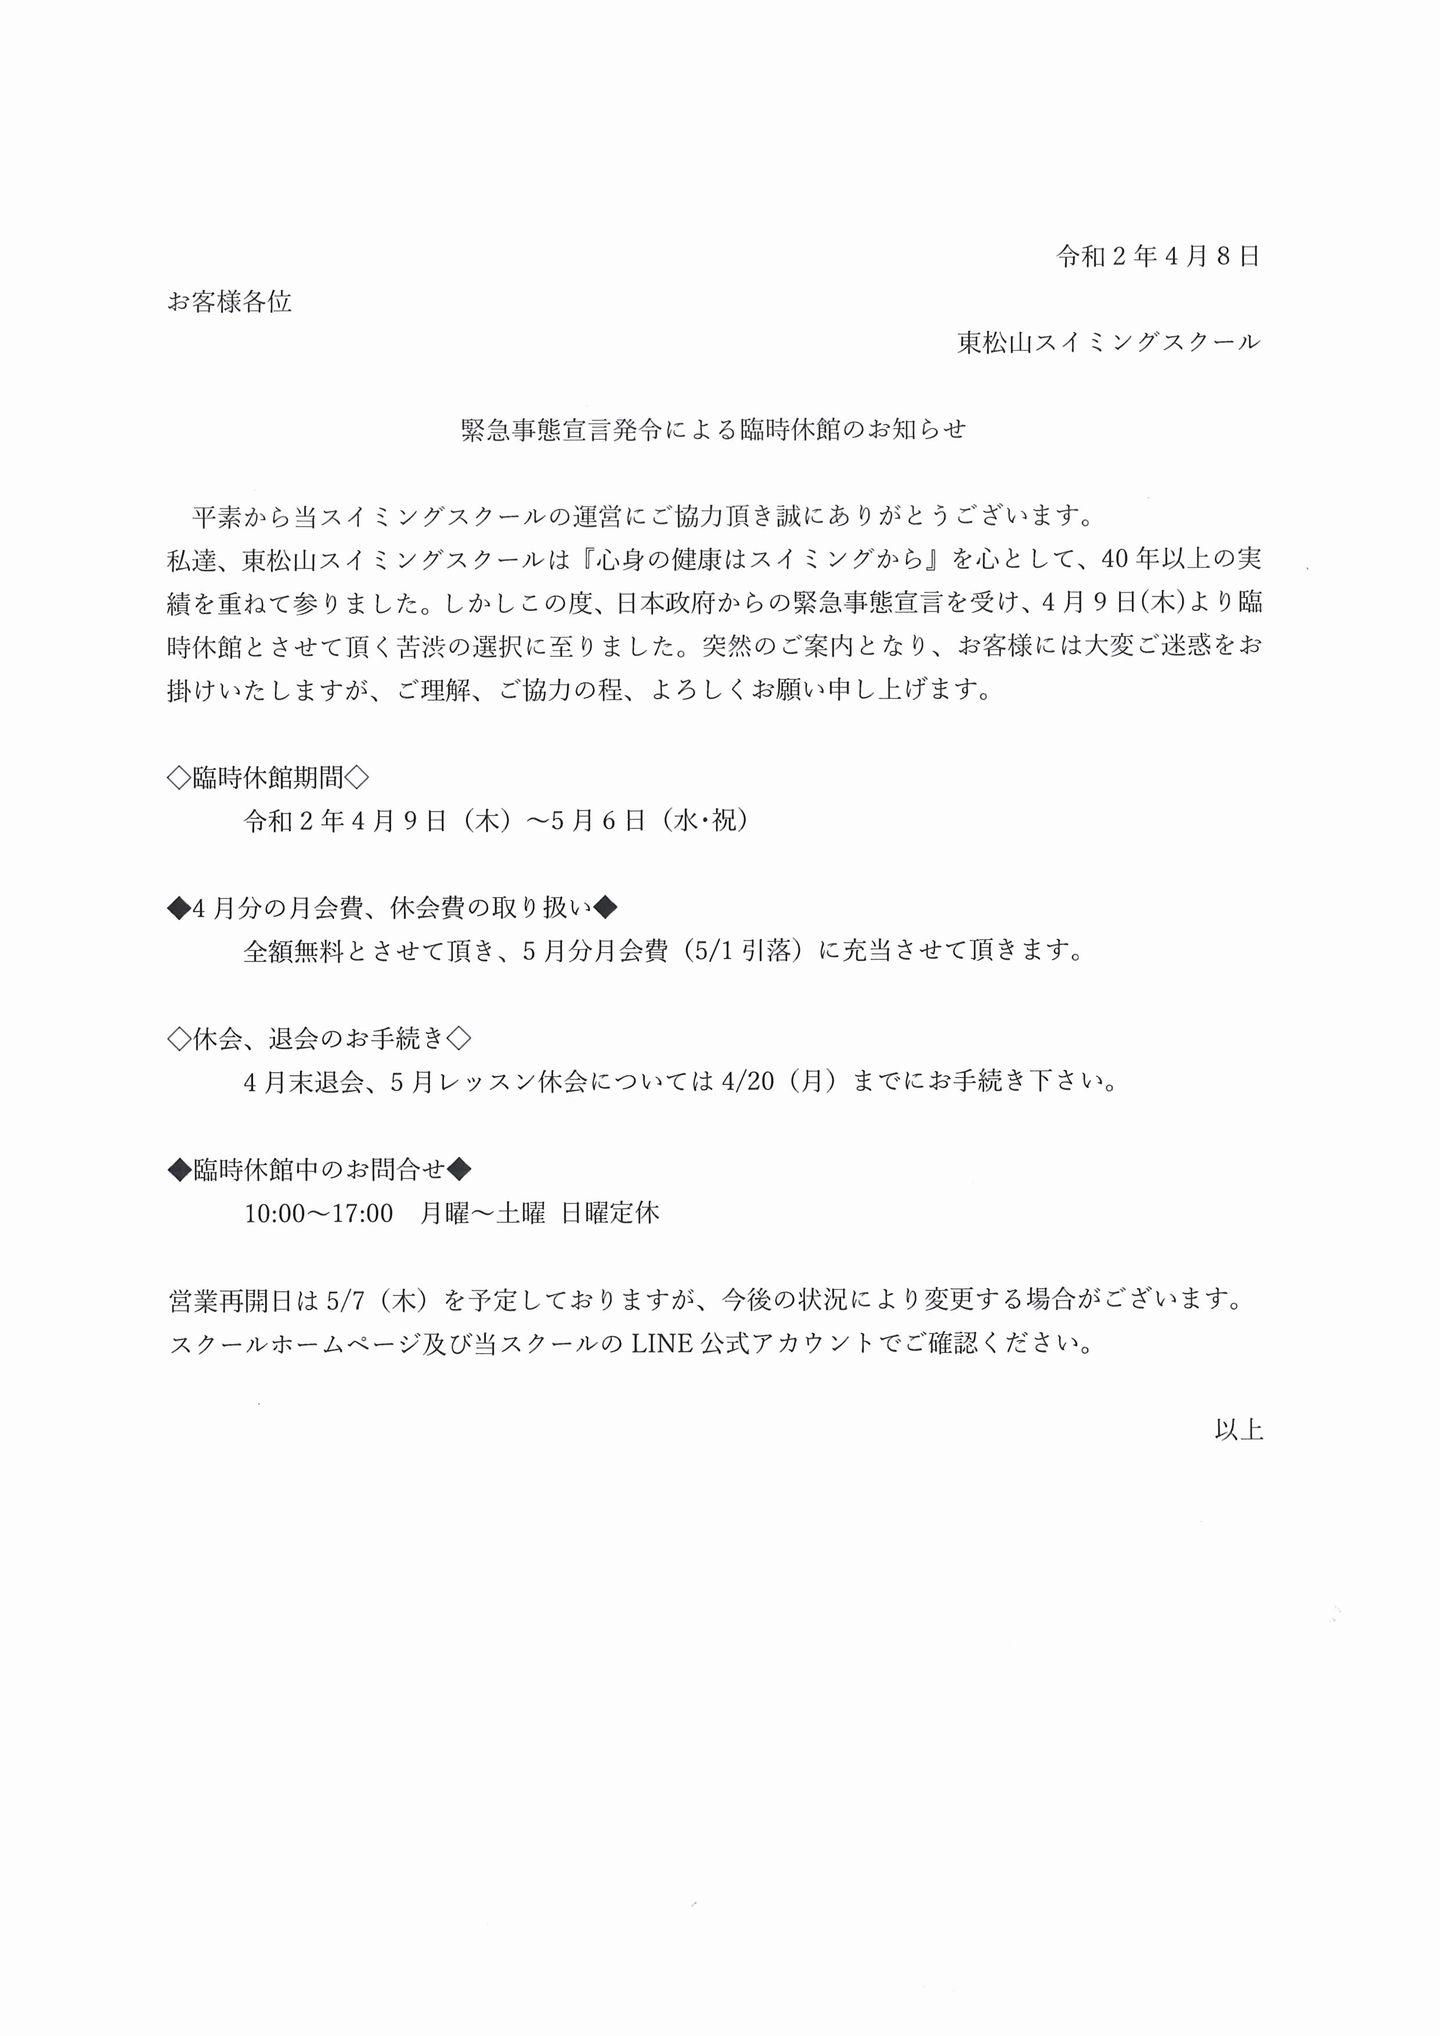 東松山緊急事態宣言